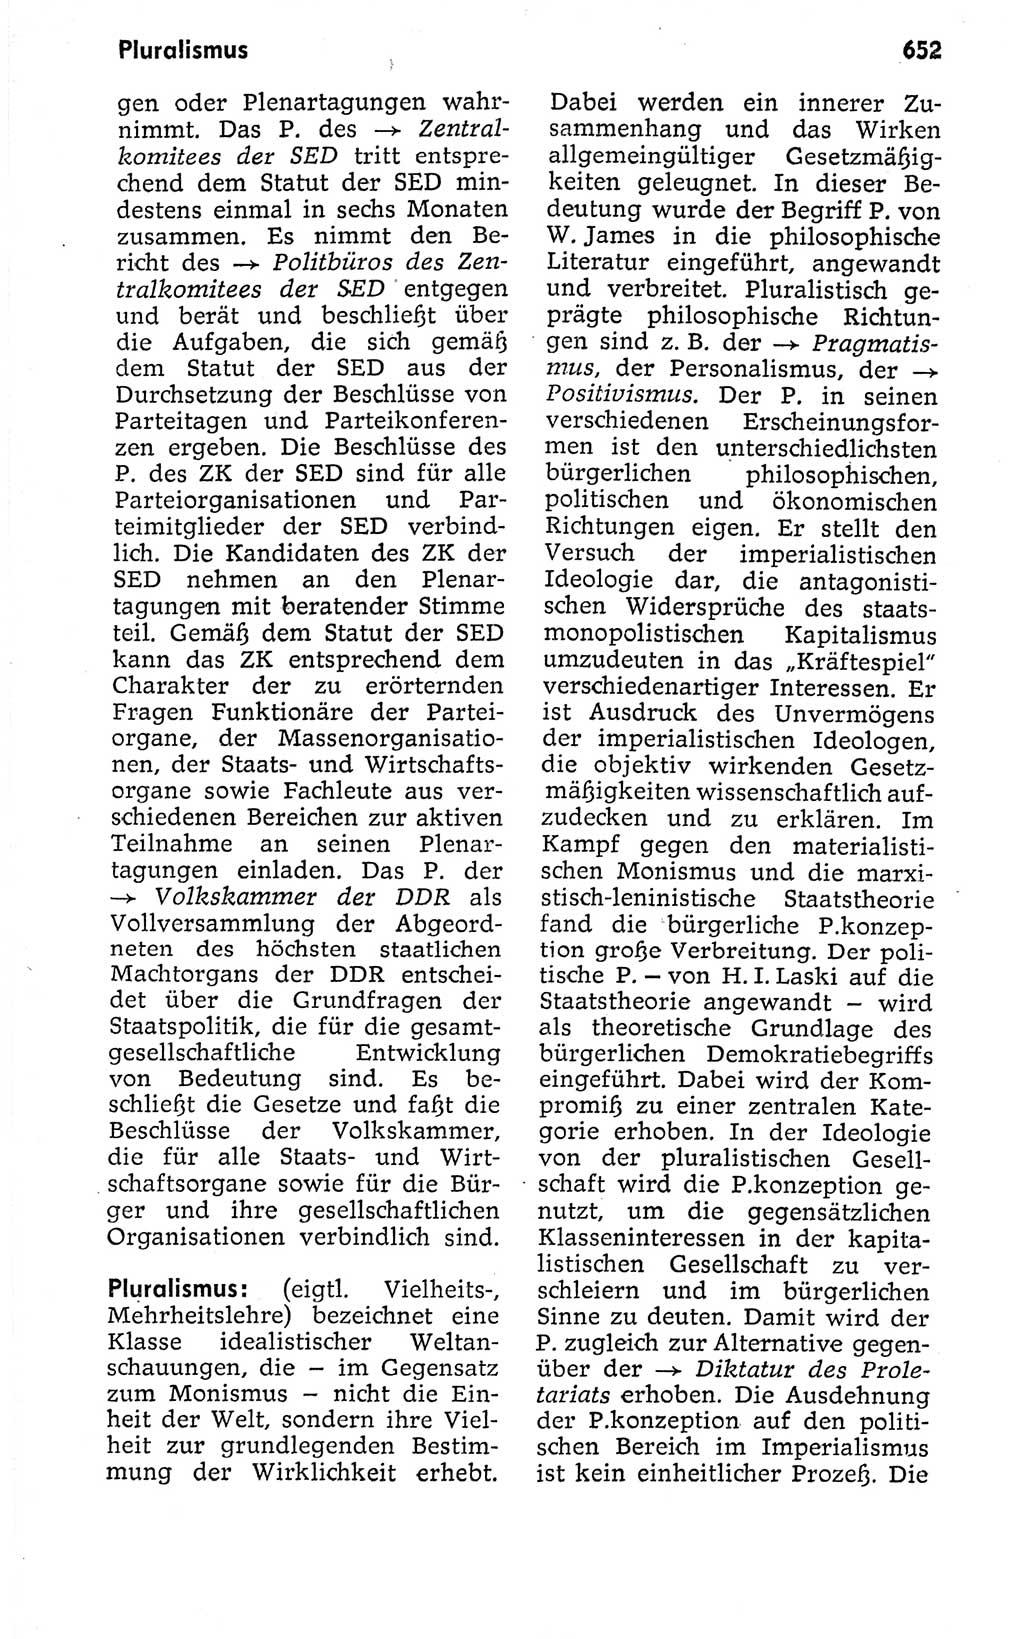 Kleines politisches Wörterbuch [Deutsche Demokratische Republik (DDR)] 1973, Seite 652 (Kl. pol. Wb. DDR 1973, S. 652)